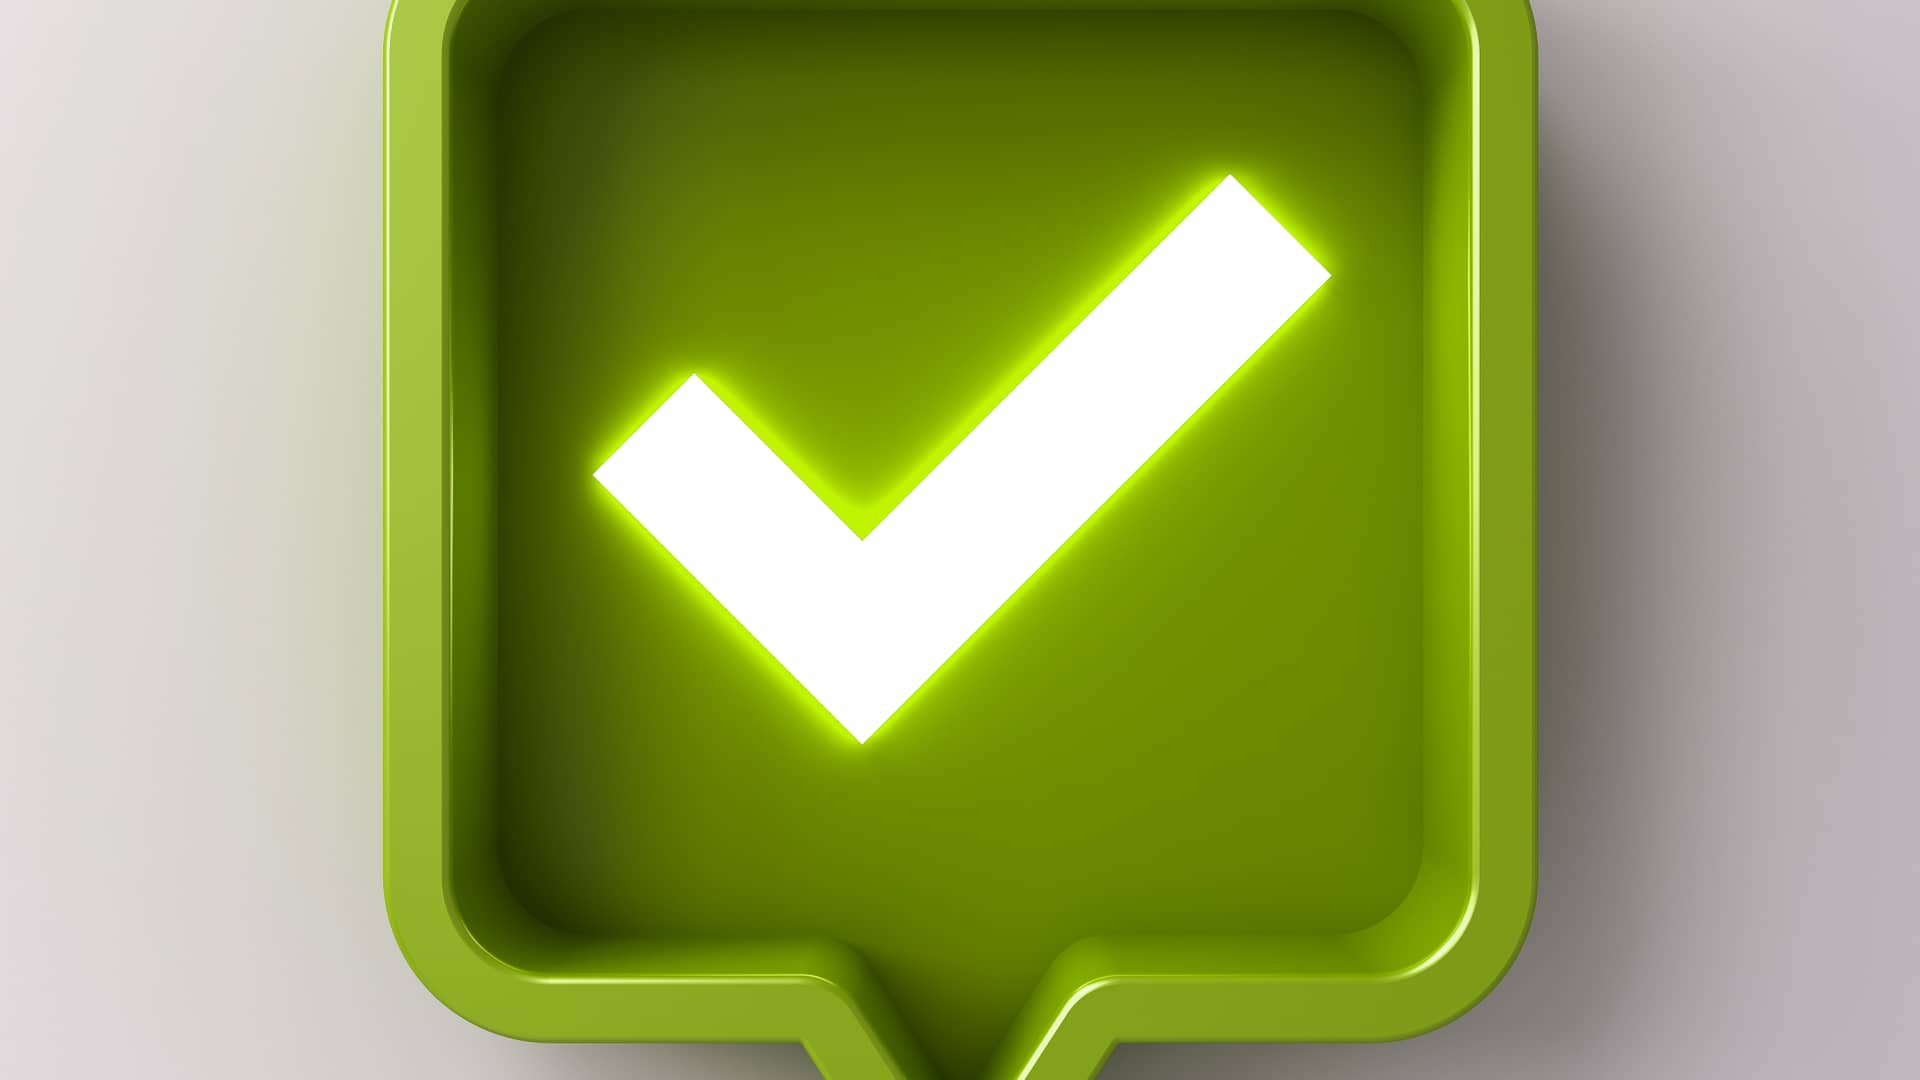 Icono check verde simboliza confirming factoring de bankia